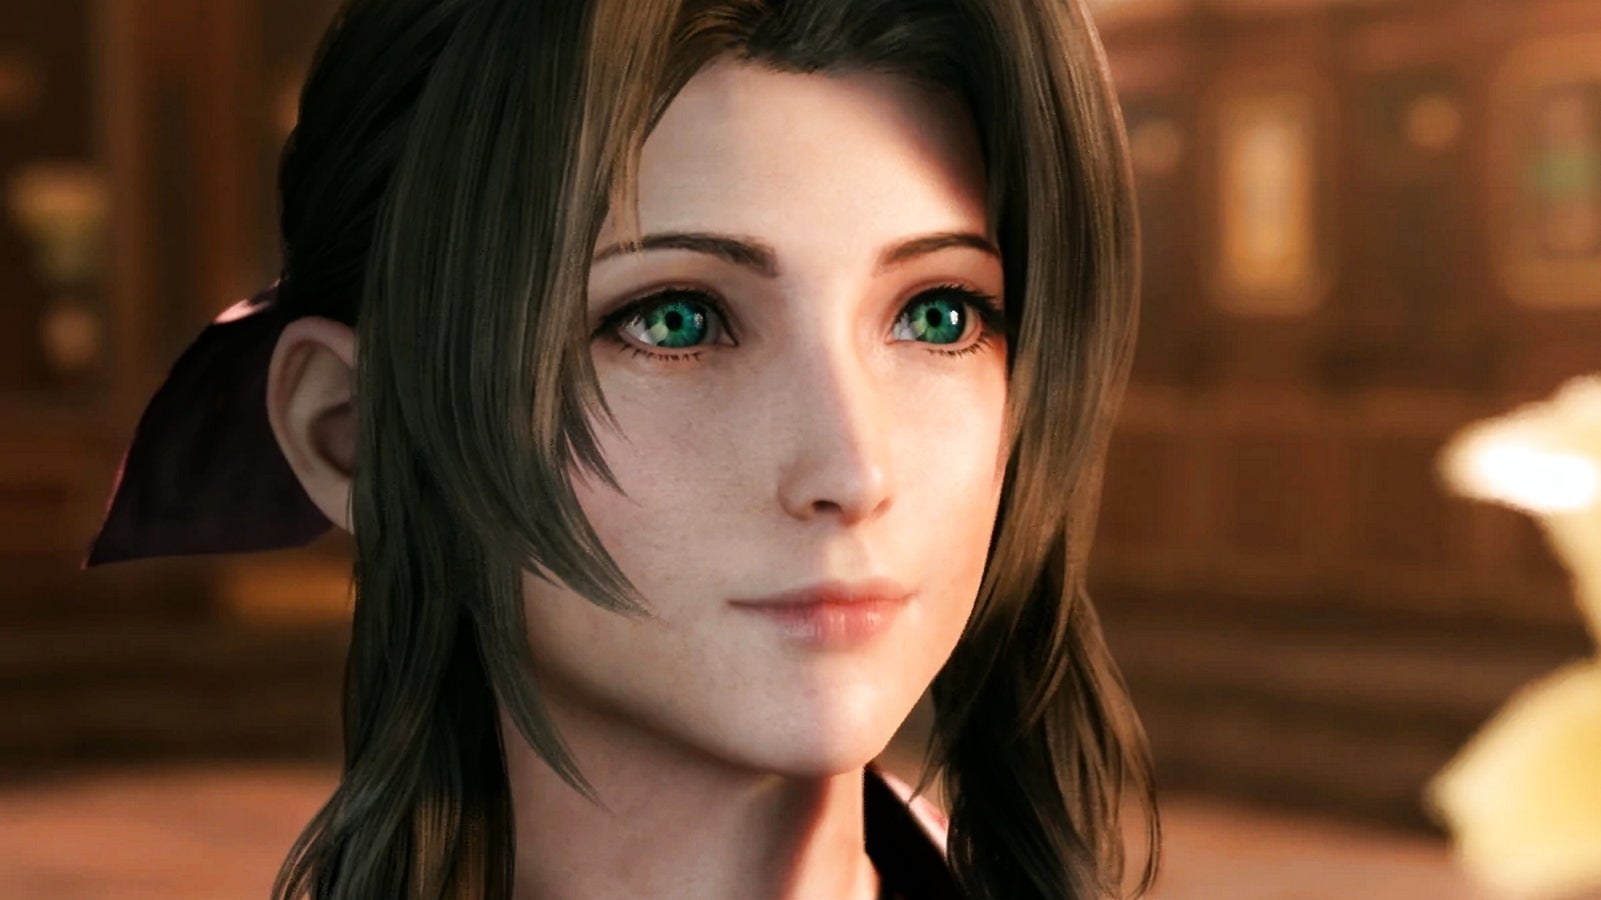 Bilder zu Final Fantasy 7 Remake wurde von Horizon Zero Dawn beeinflusst, sagt Direktor Naoki Hamaguchi